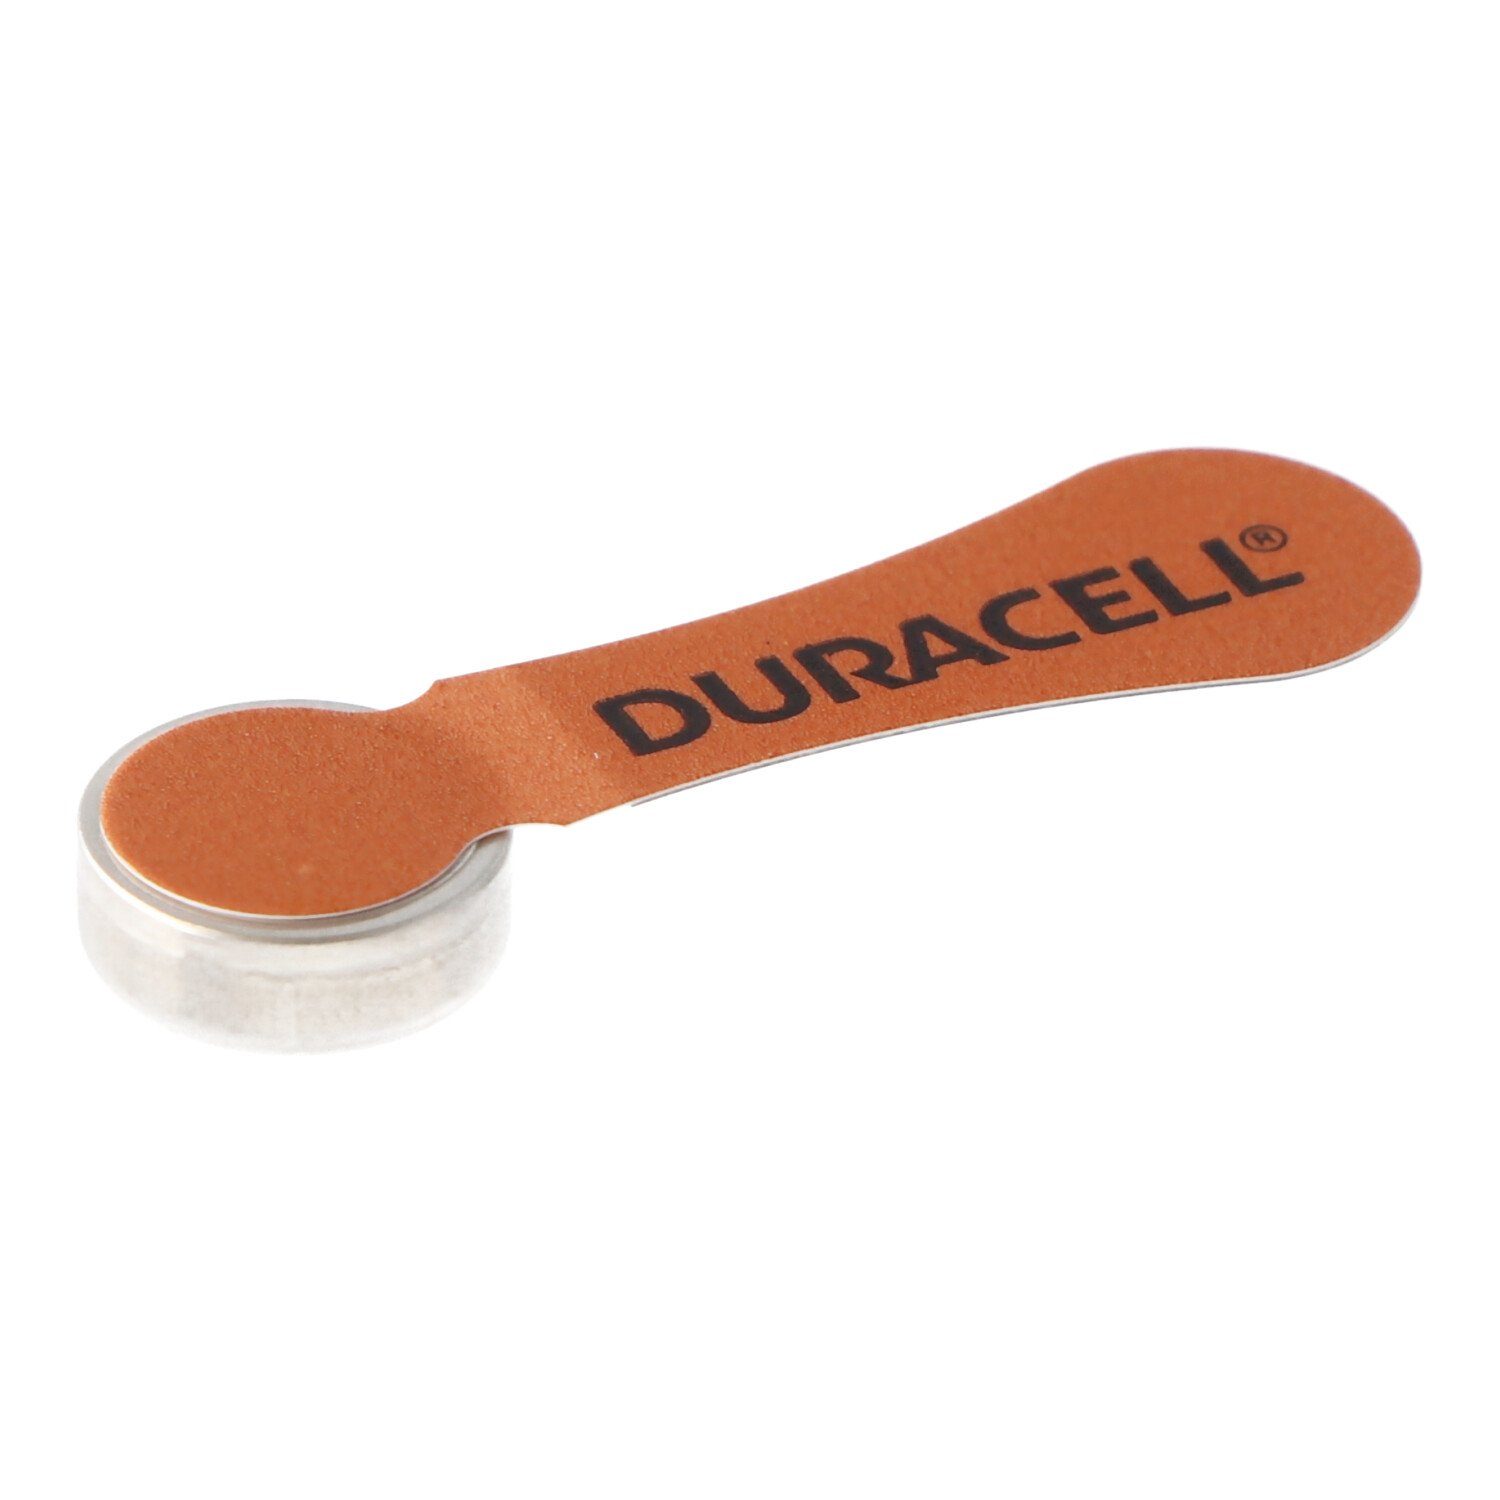 Duracell Duracell 160mAh (1,4 DA AC Batterie, 312 Zn/Luft V) 1,4Volt Hörgerätebatterie